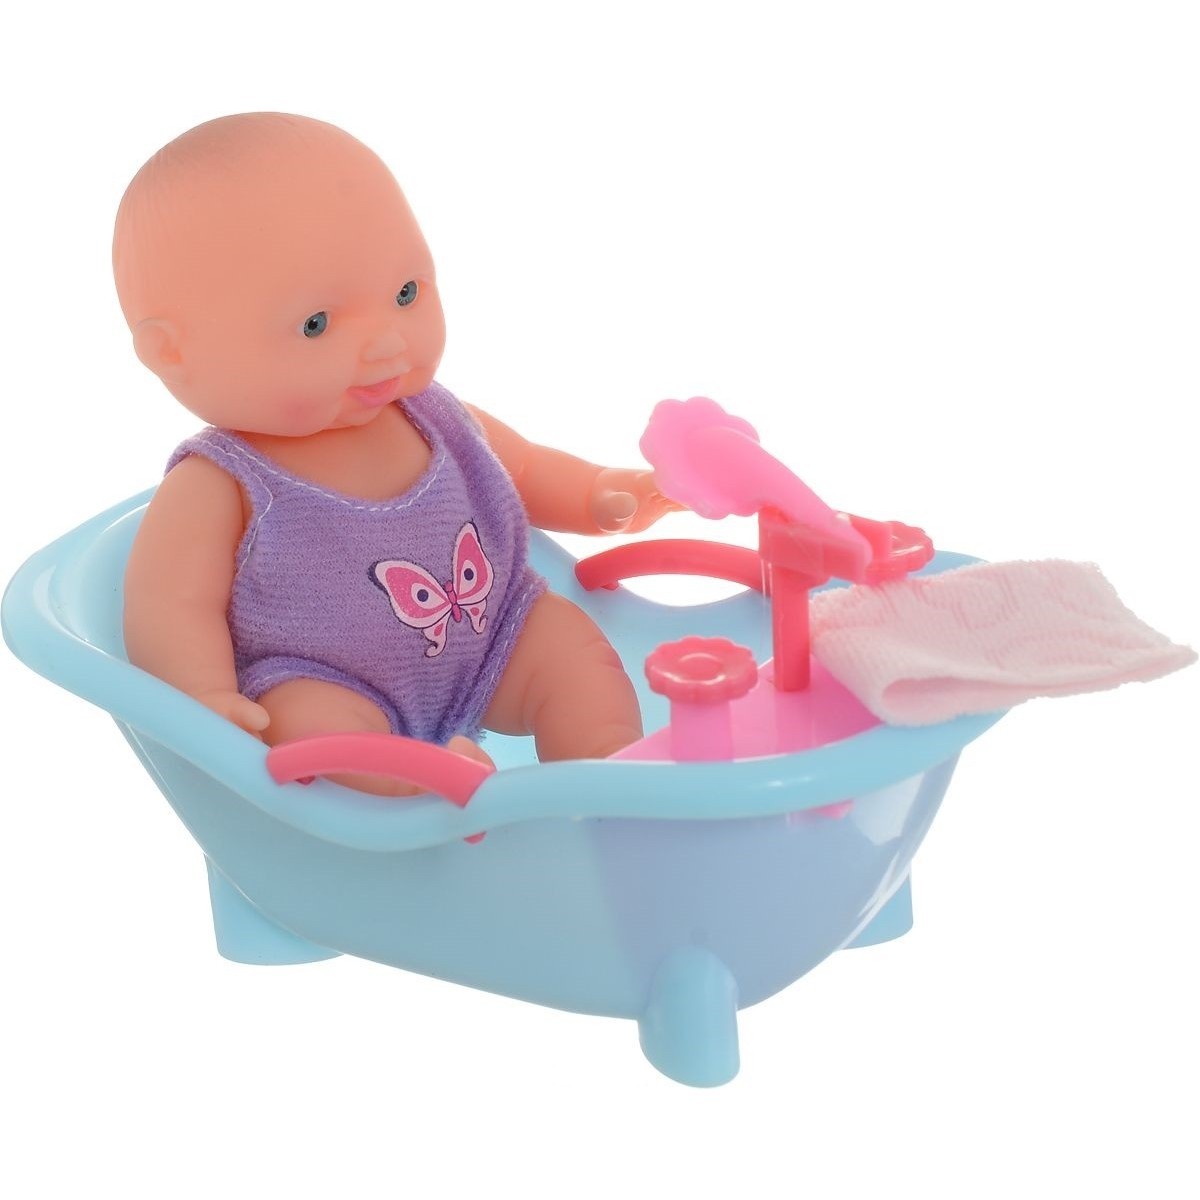 Кукла купается. Пупс в ванночке. Кукла пупсик в ванночке. Ванночка для кукол. Пупс в ванночке с ручкой.